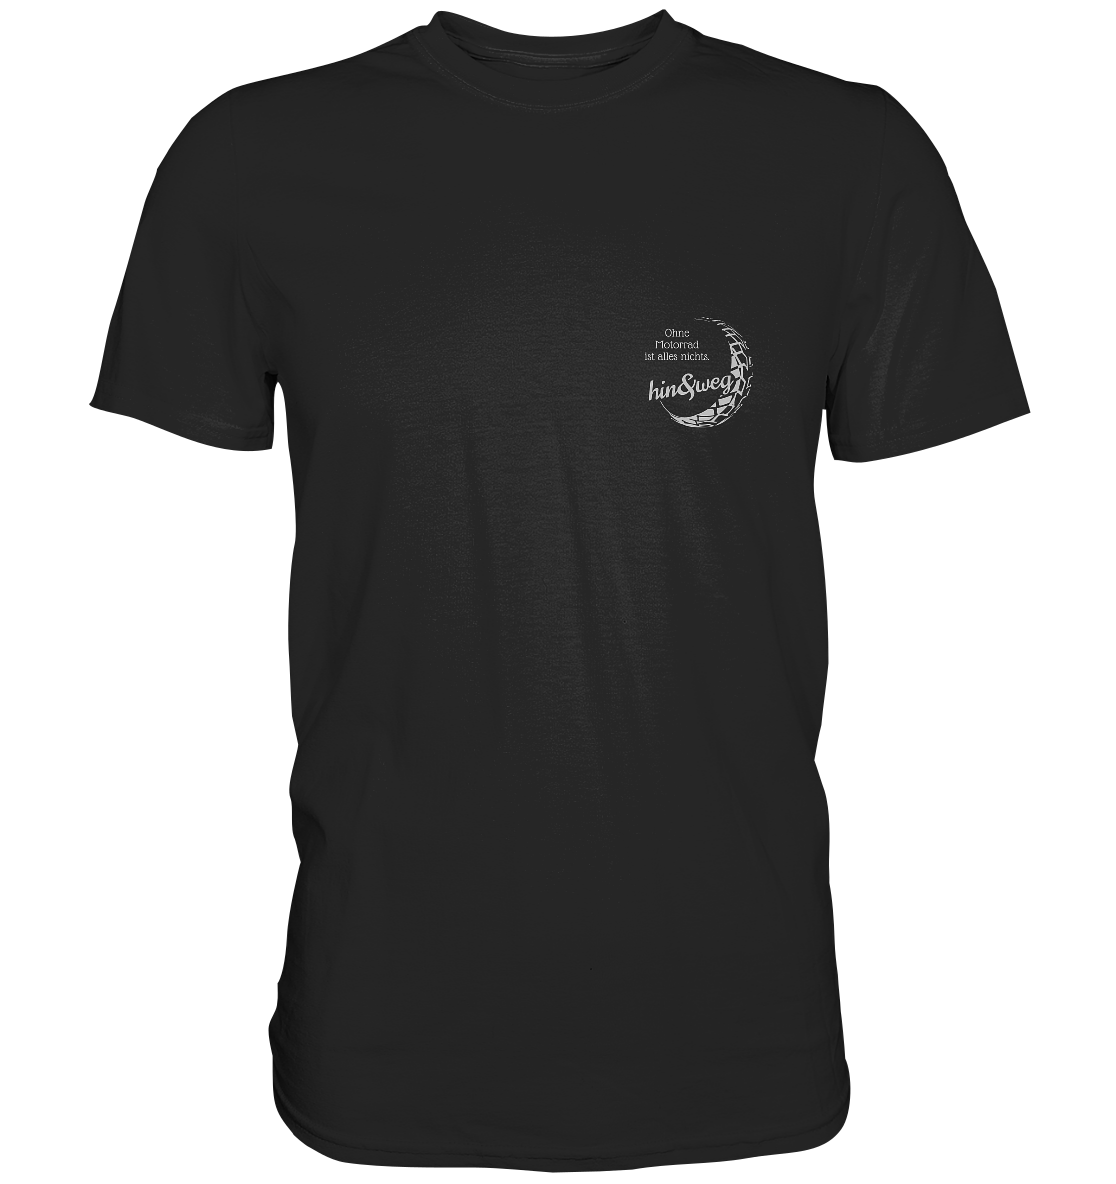 Herren-T-Shirt Rundhals, weißer Aufdruck: Logo hin und weg mit Spruch "Ohne Motorrad ist alles nichts.", schwarz